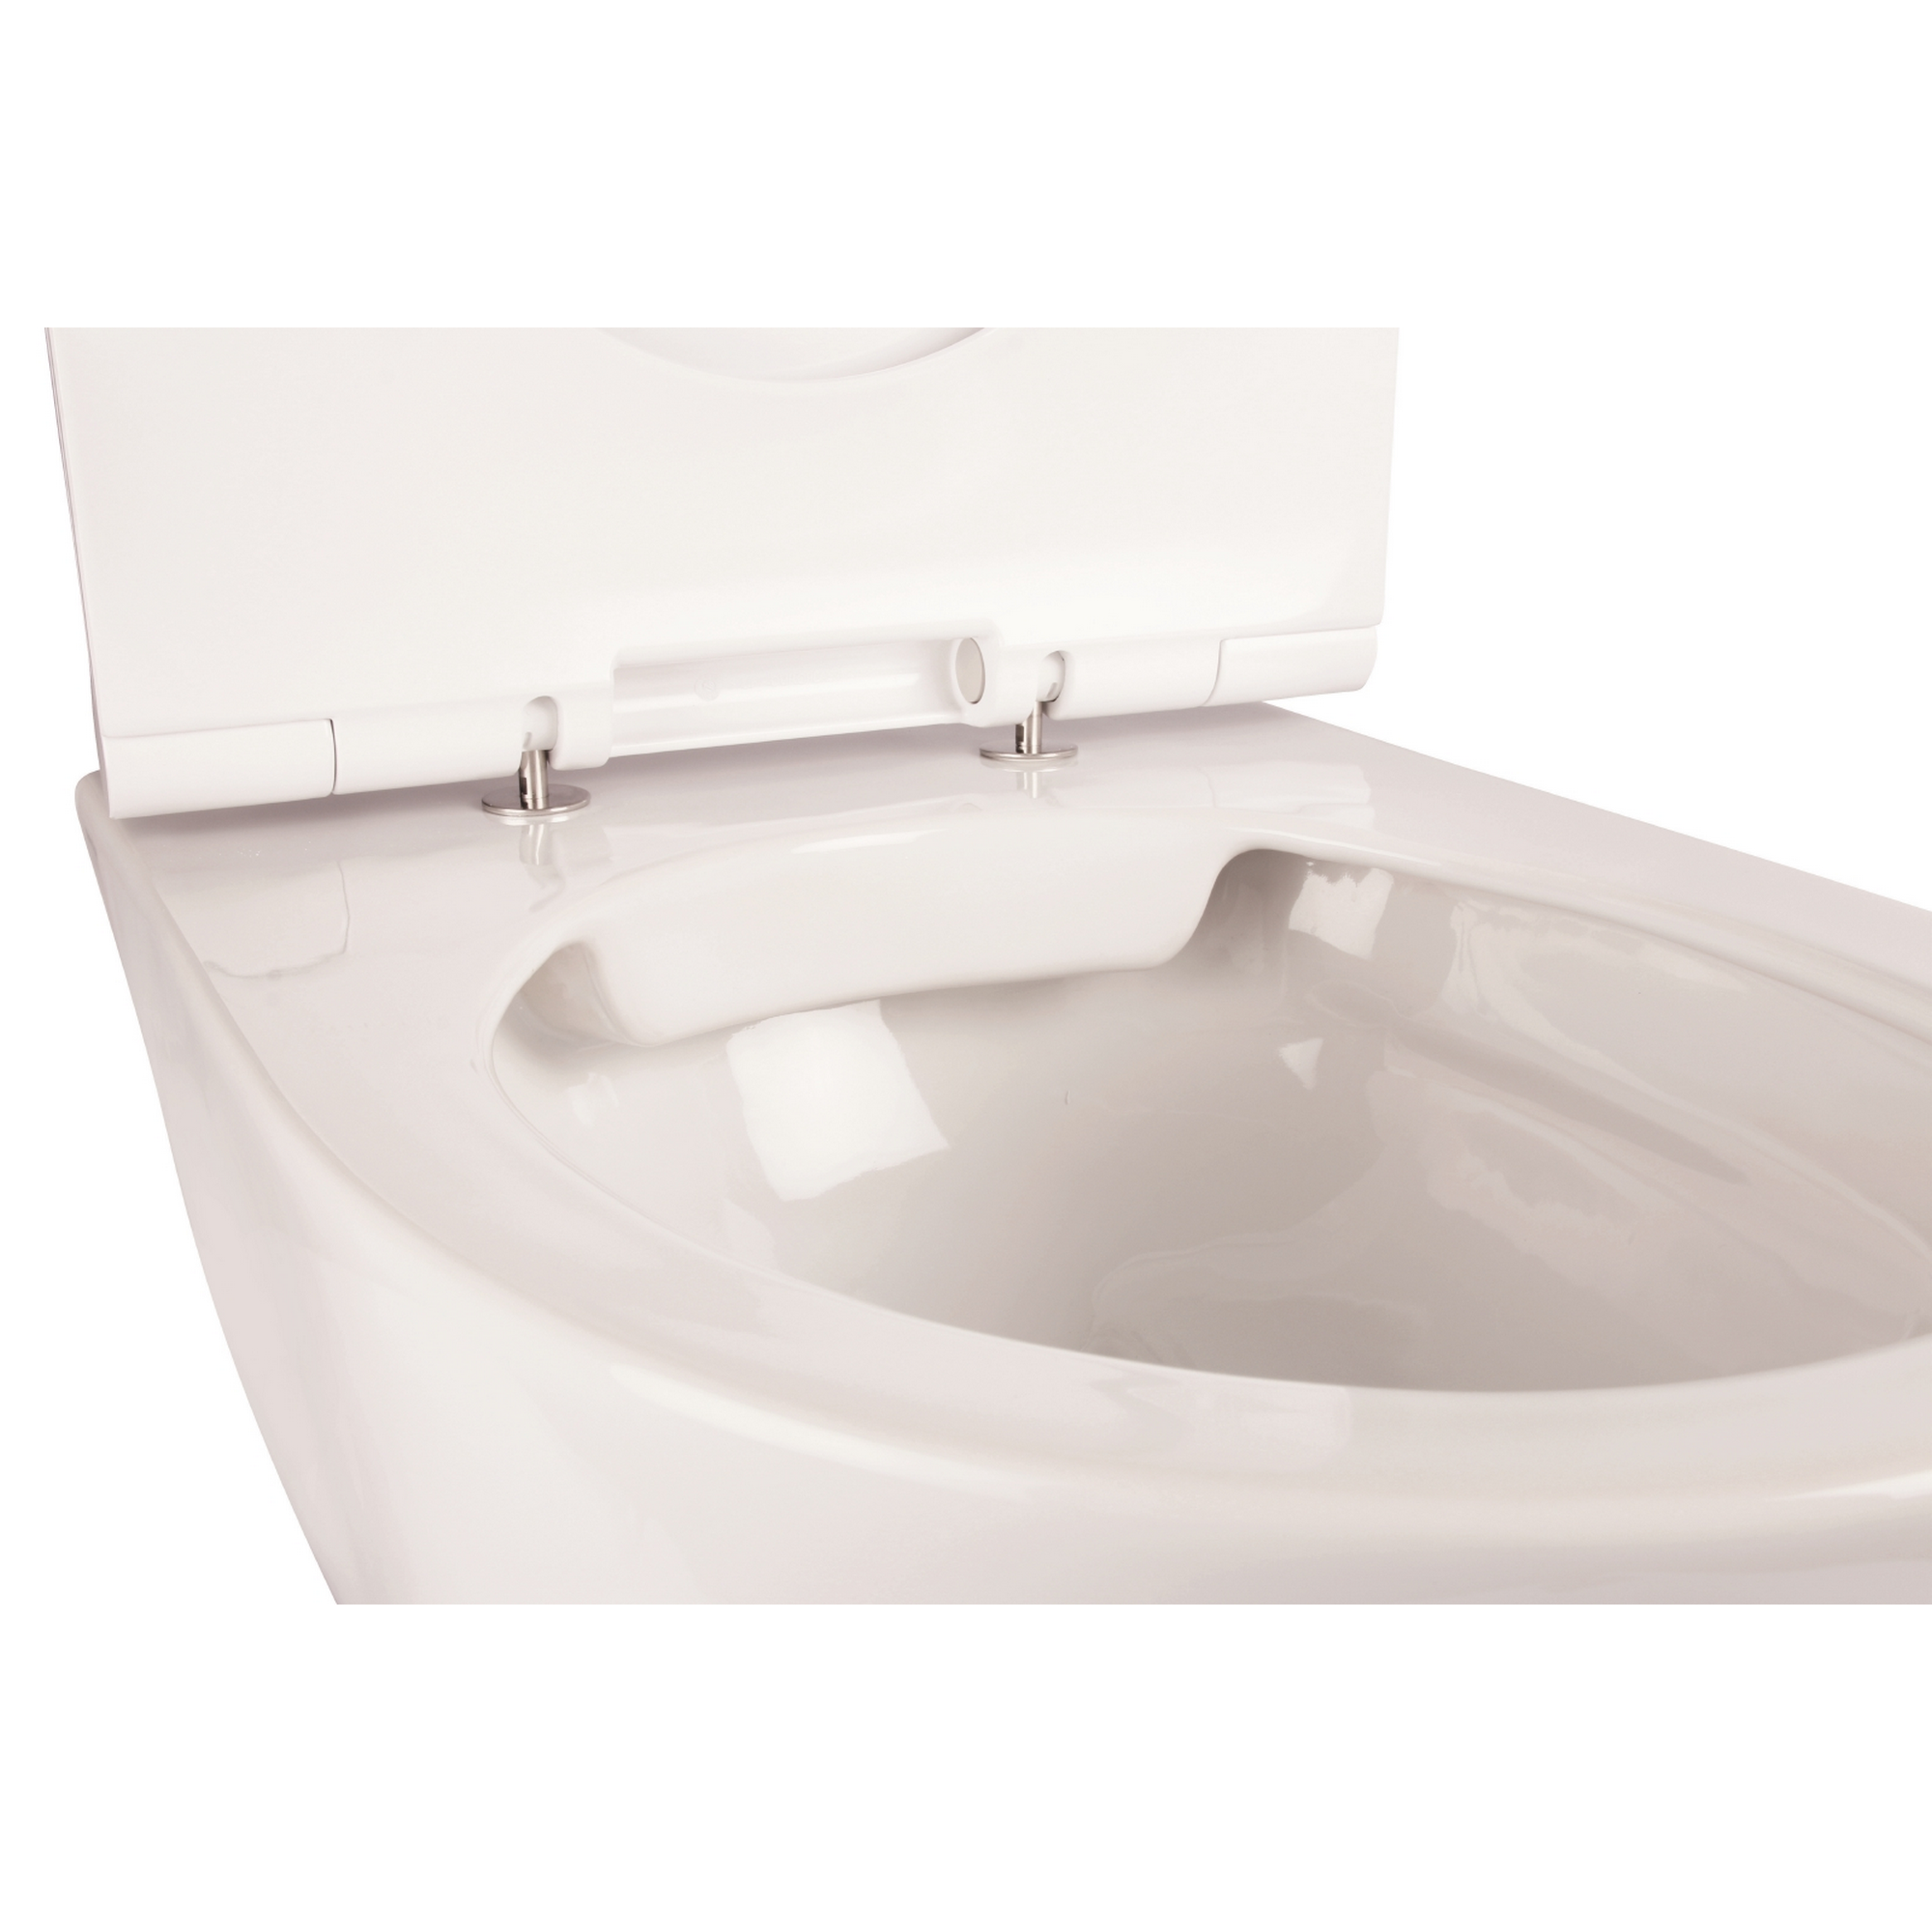 Wand-WC 'Lagon' weiß 38 x 35 x 56 cm, inkl. WC-Sitz